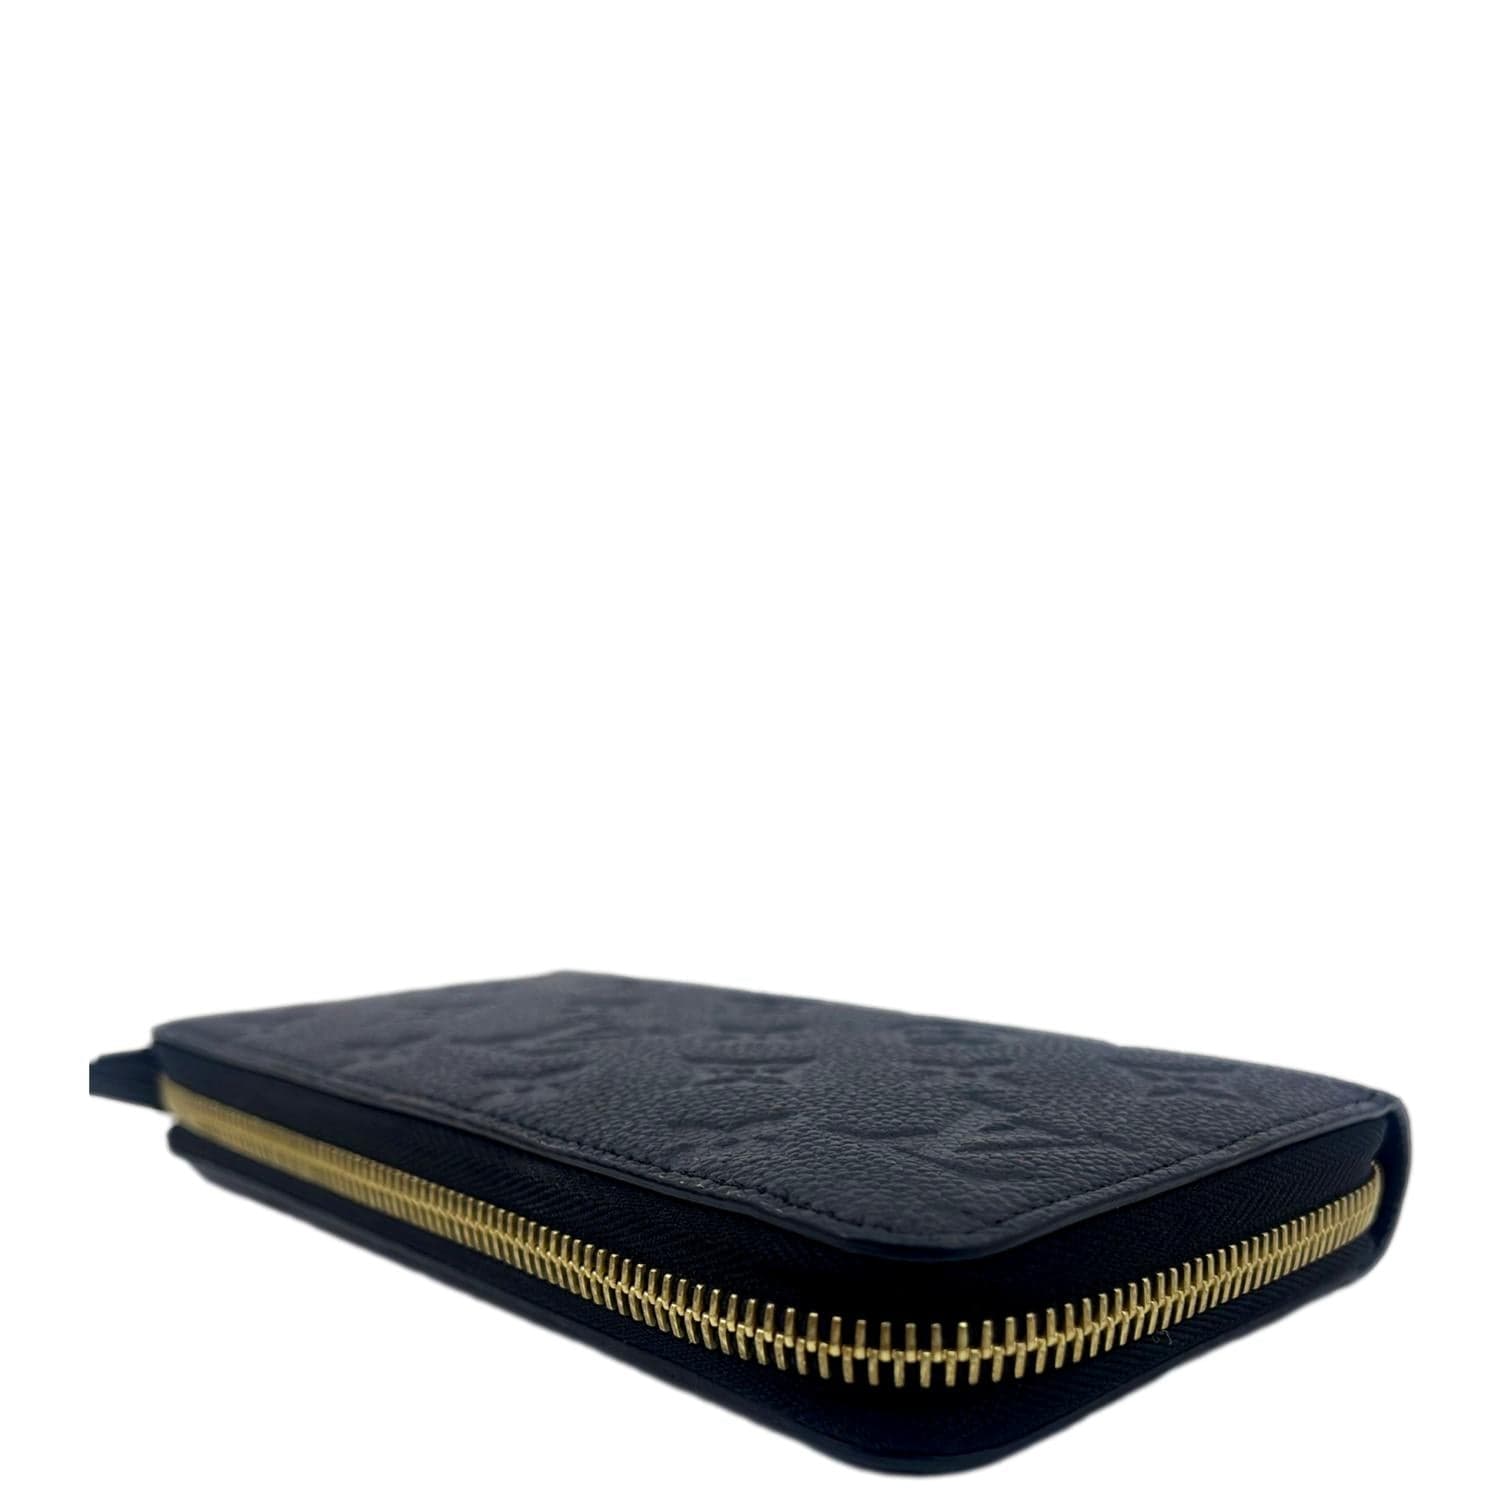 Louis Vuitton Empreinte Zippy Wallet Dune Beige Zip Around - MyDesignerly